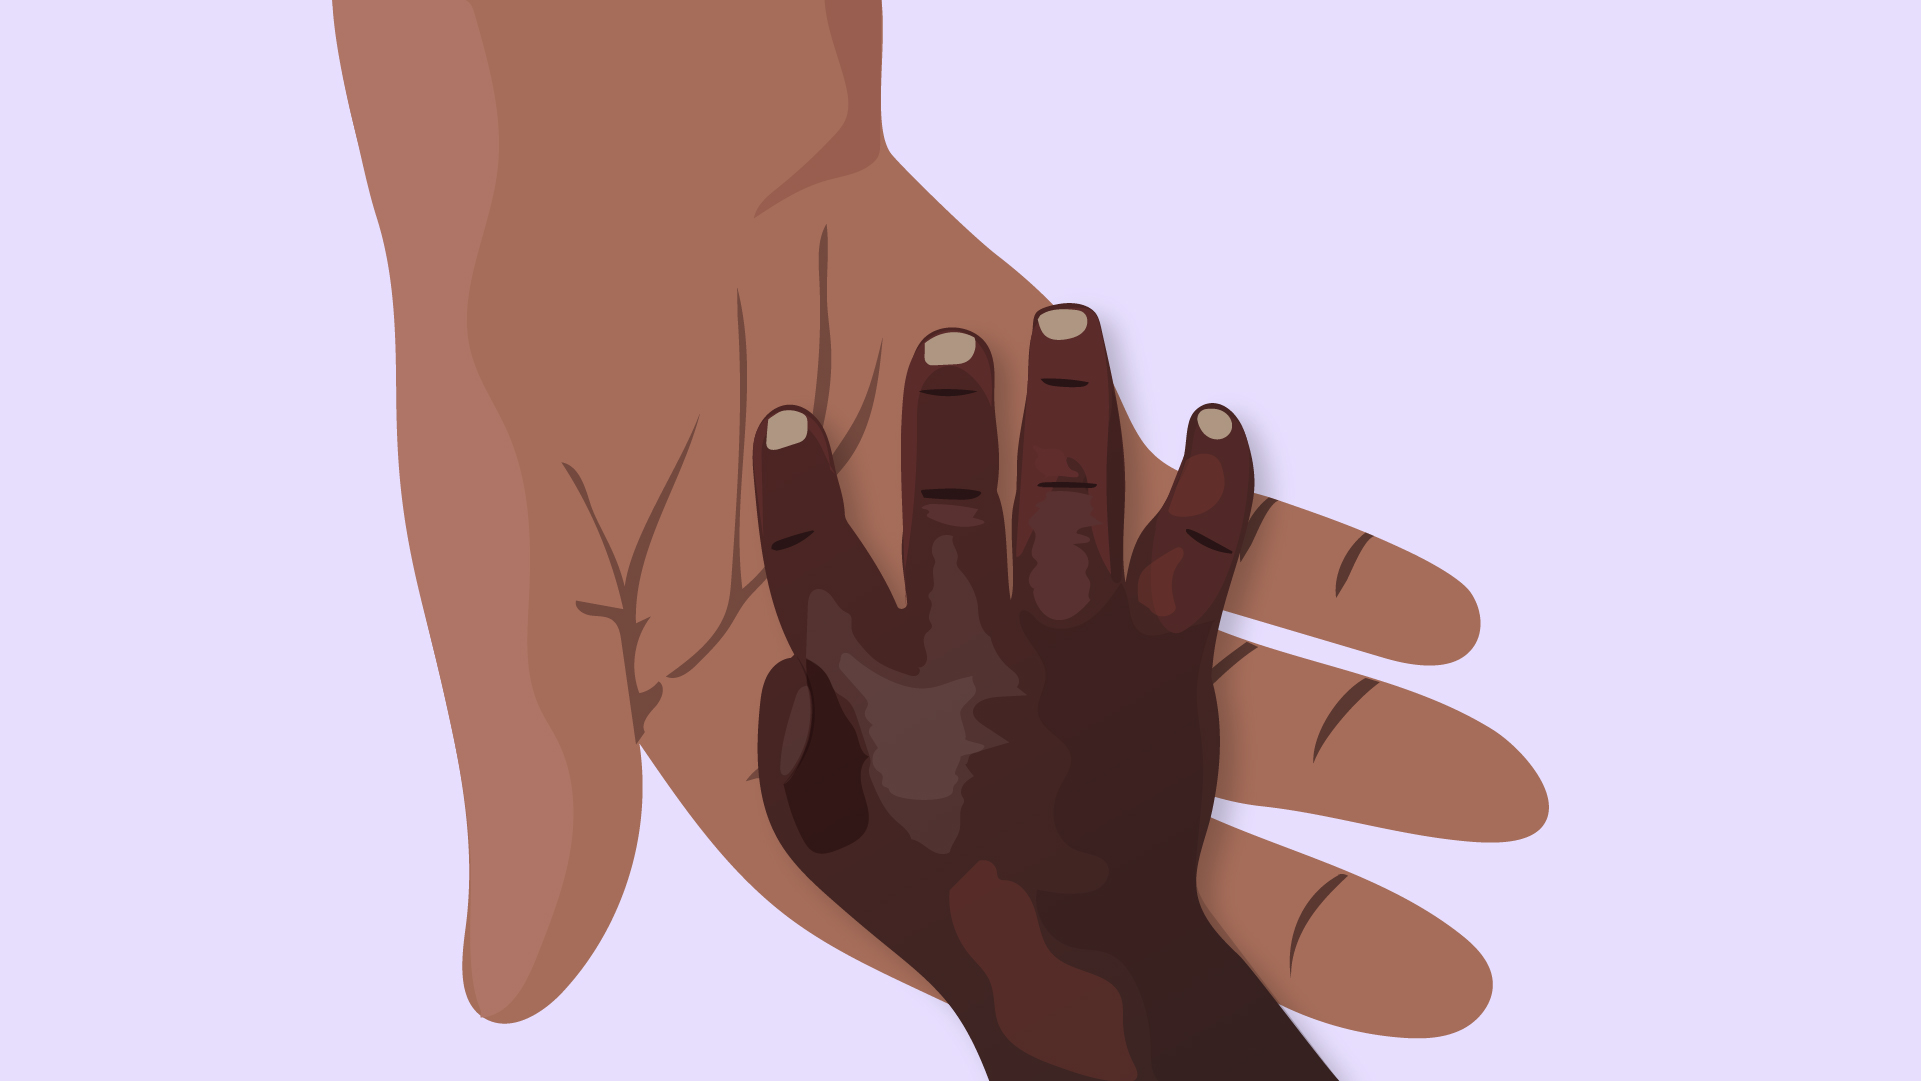 Ilustração de uma mão de um adulto segurando uma mão de uma criança com doença falciforme, com o sintoma característico da condição: inchaço nas mãos.